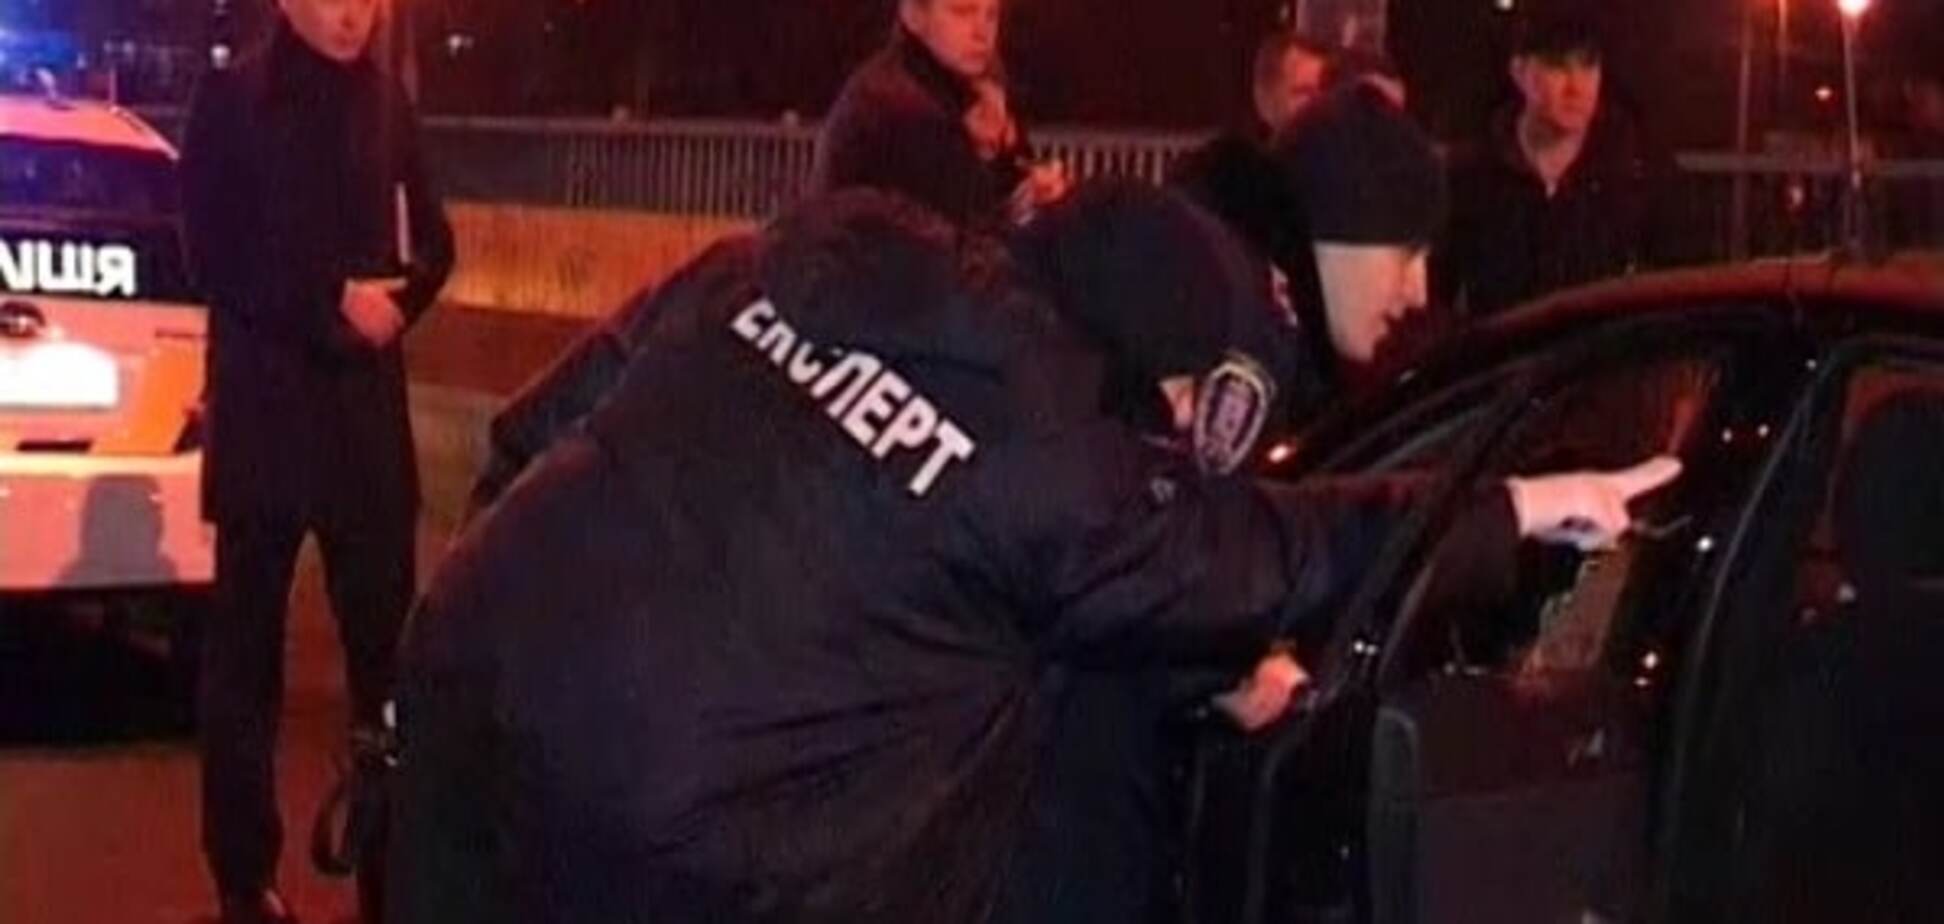 Розстріл таксі в Києві: в поліції повідомили подробиці інциденту